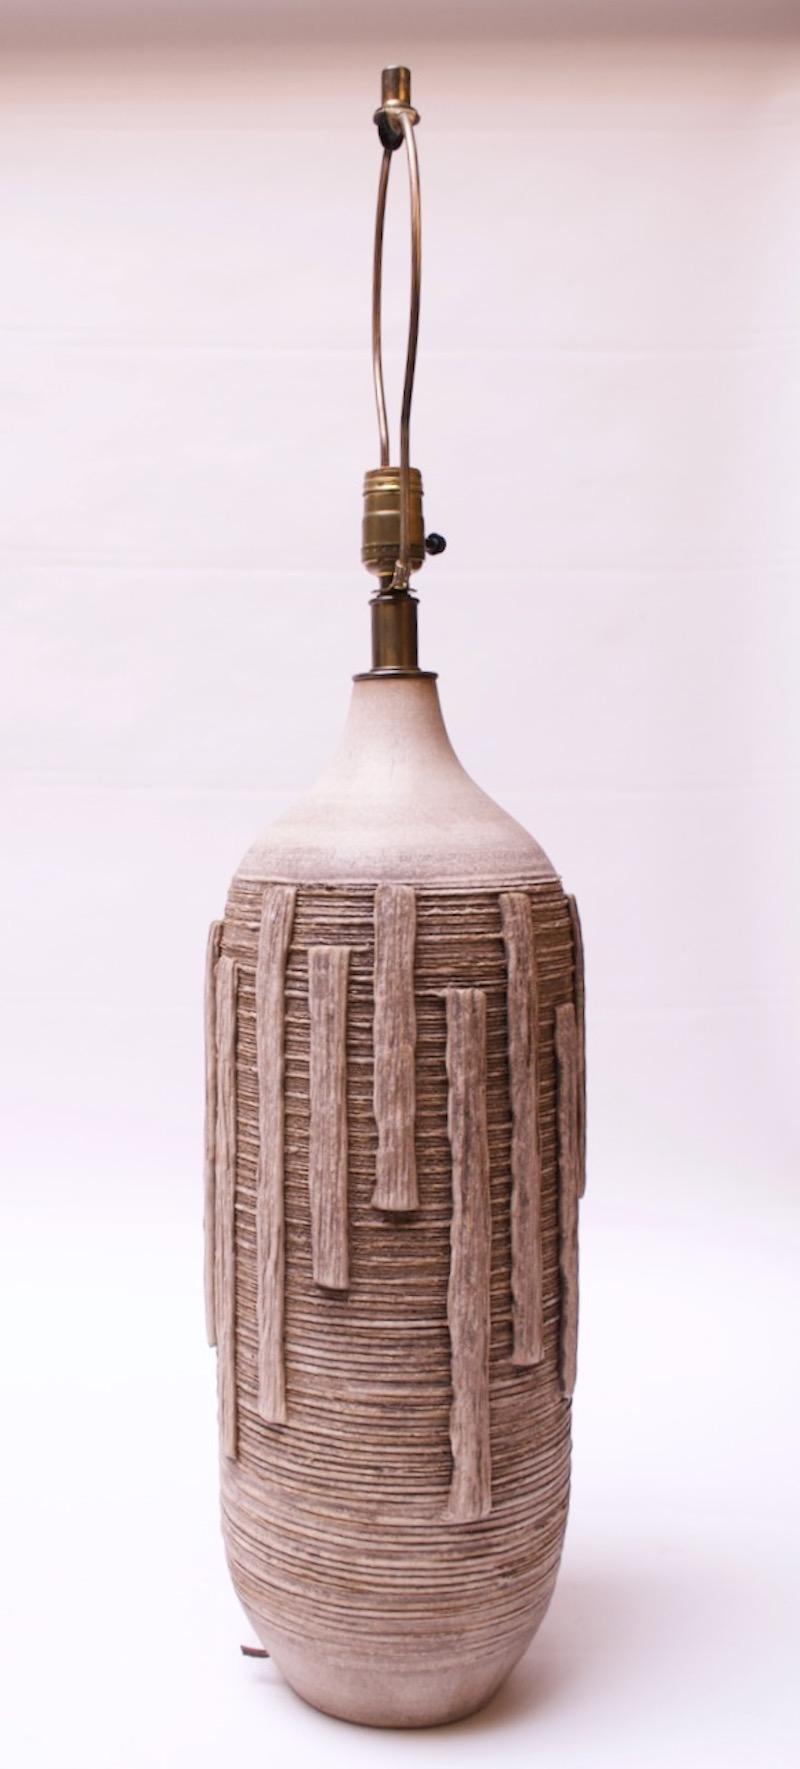 Rare lampe à grande échelle des années 1950, Lee Rosen pour Design Technics, en terre cuite émaillée et tournée à la main, de couleur taupe. Décor horizontal brut et fortement texturé, incisé / sgraffite, avec détails verticaux appliqués en